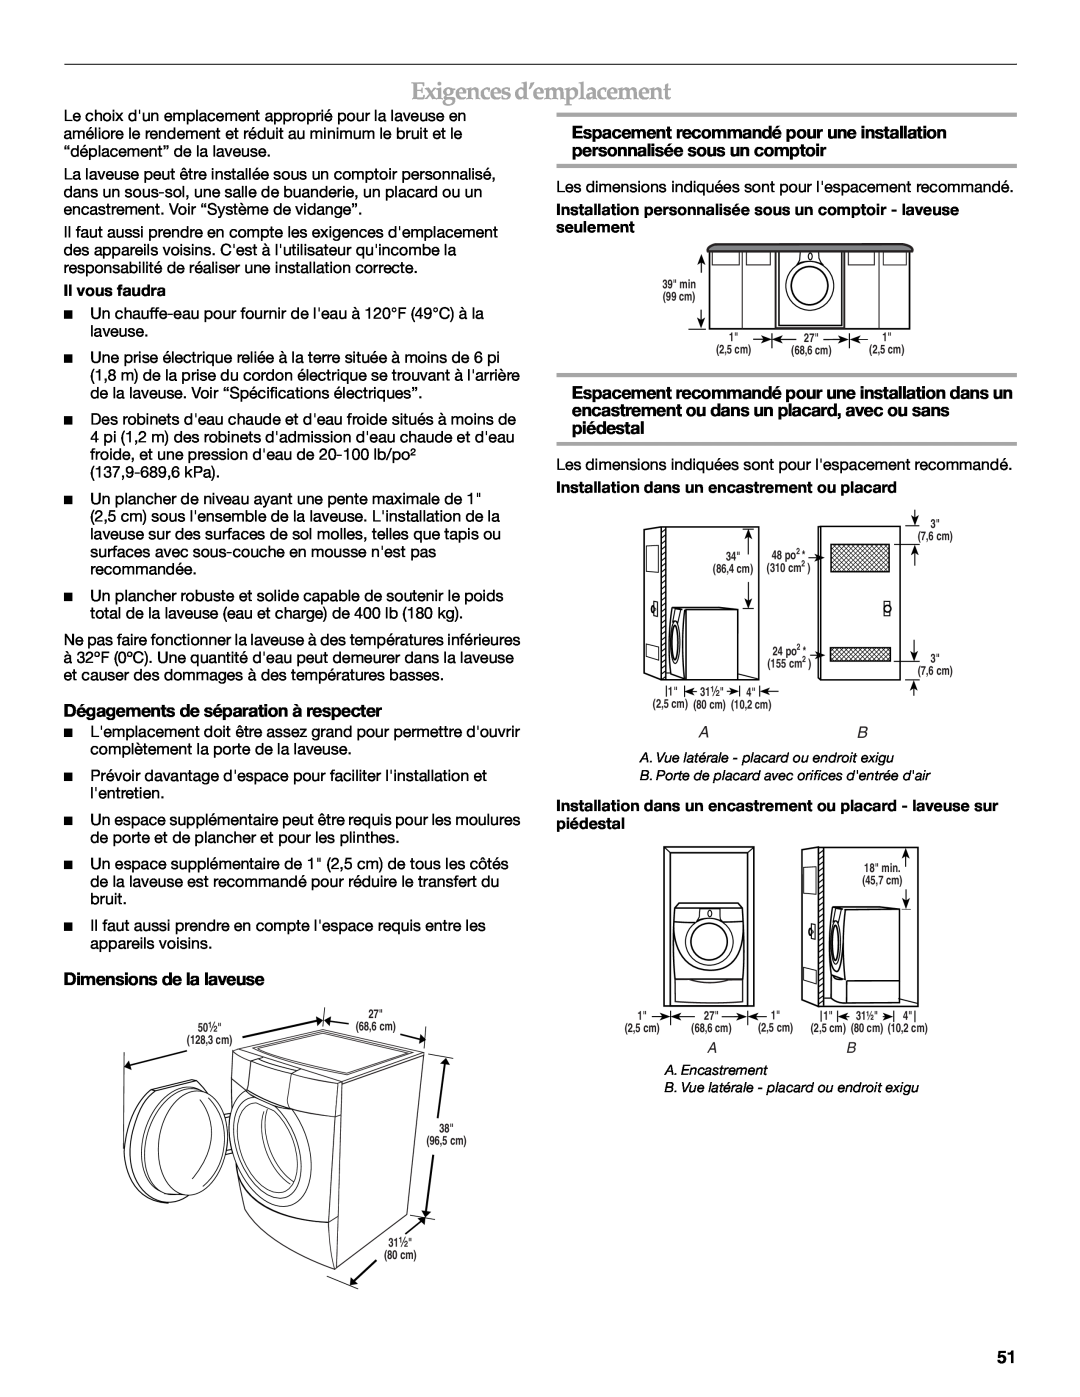 Maytag 8182969 manual Exigences d’emplacement, Dégagements de séparation à respecter, Dimensions de la laveuse 